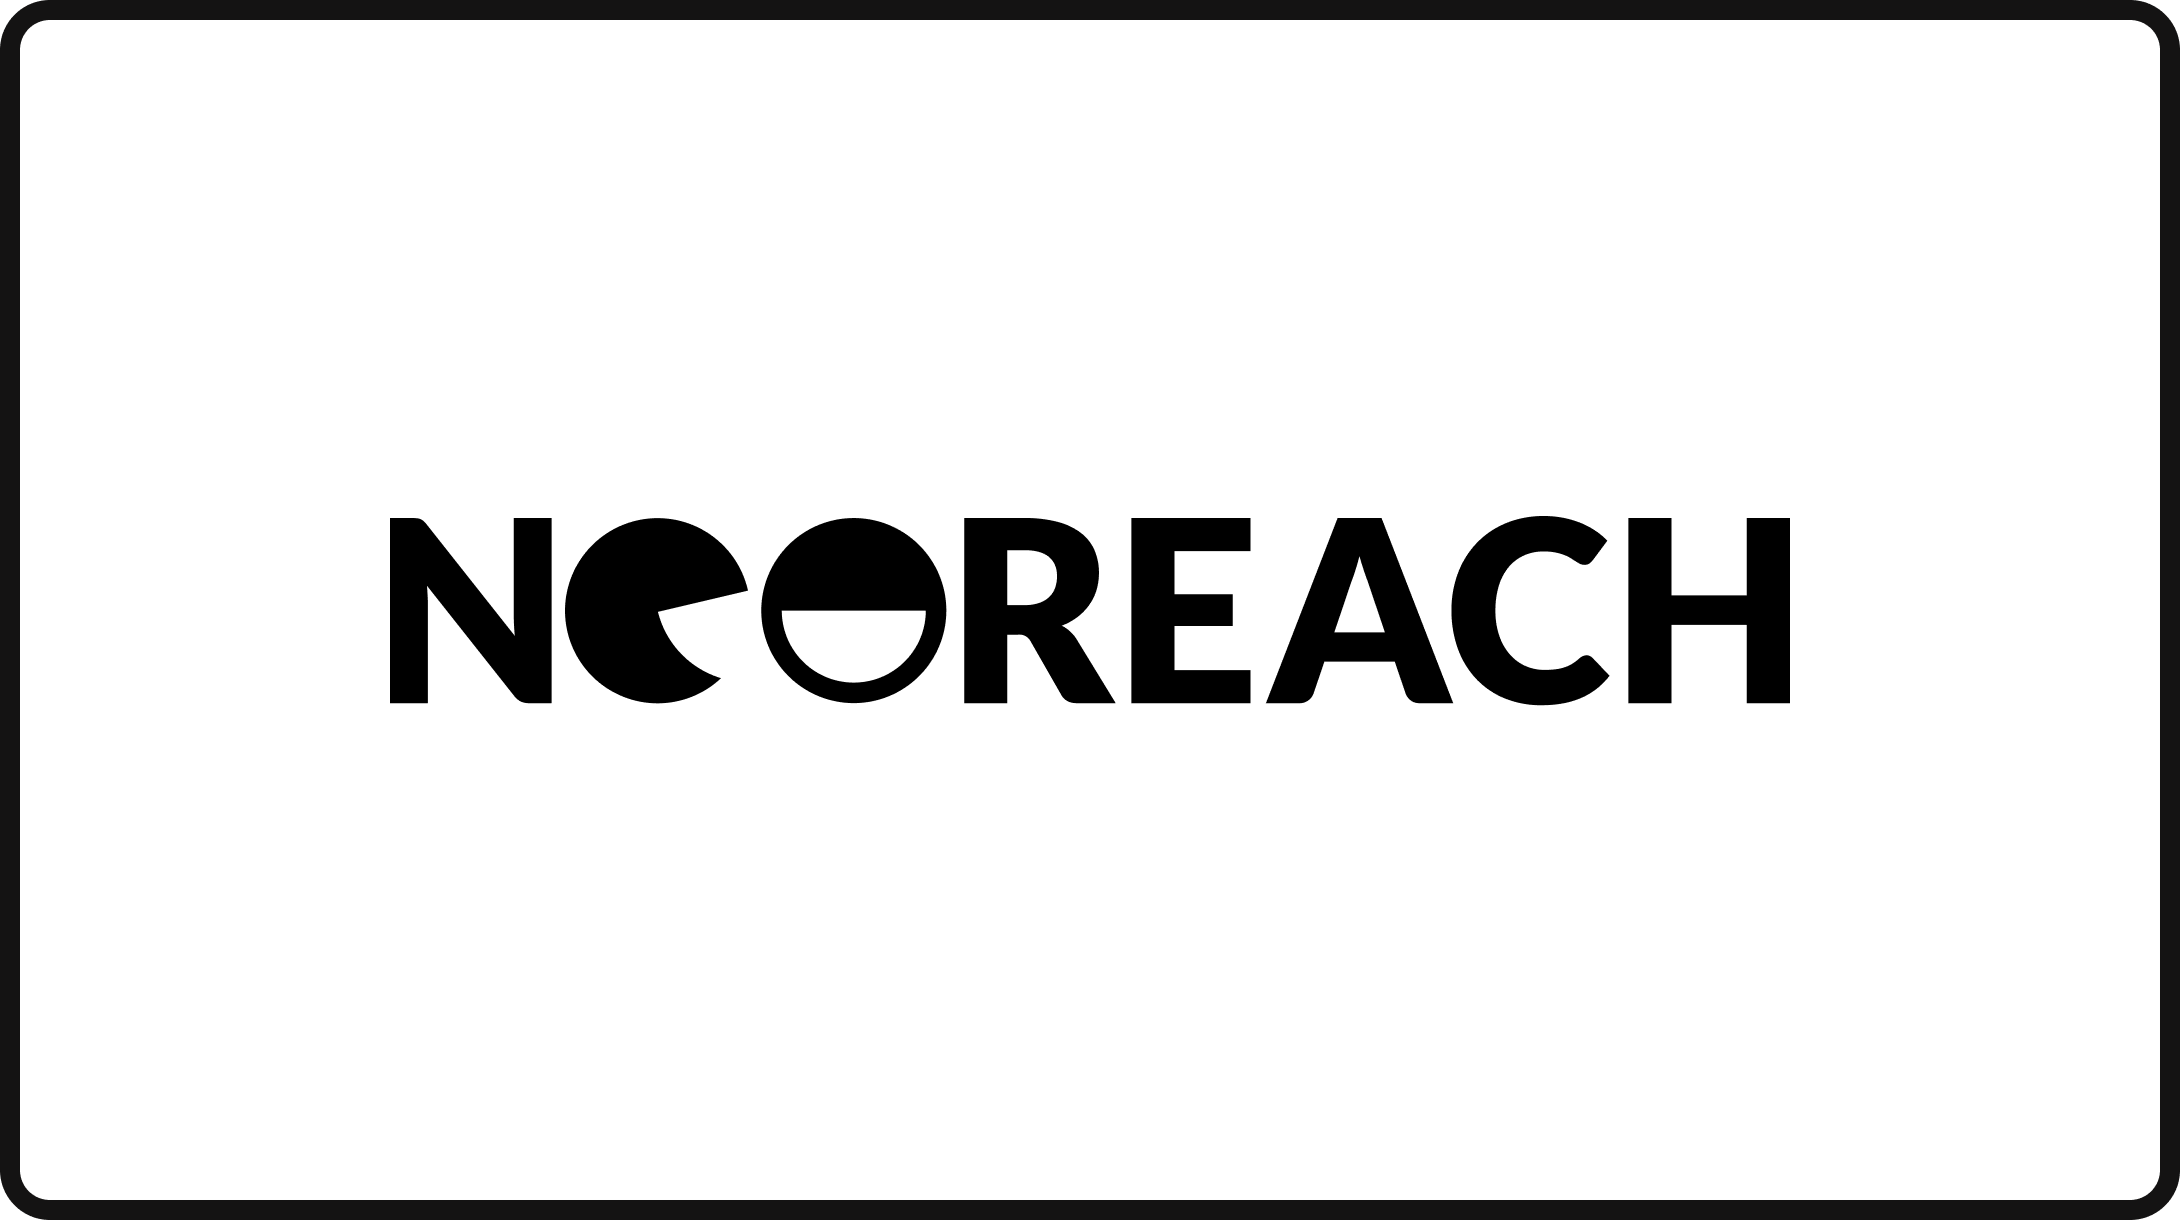 NeoReach